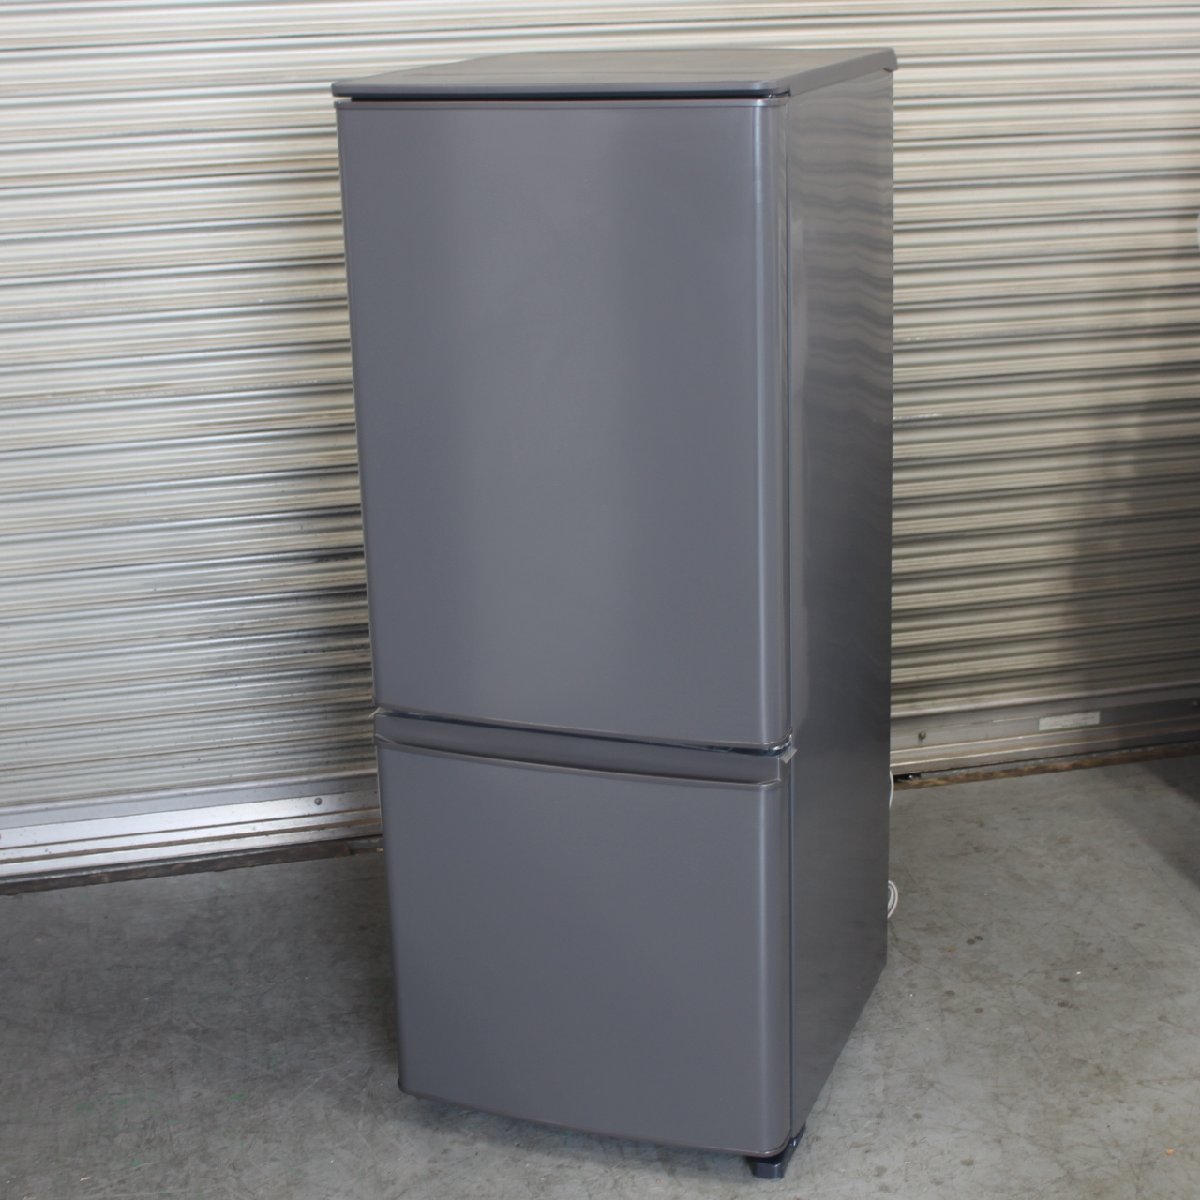 東京都狛江市にて 三菱 ノンフロン冷凍冷蔵庫 MR-P15F-H 2020年製 を出張買取させて頂きました。